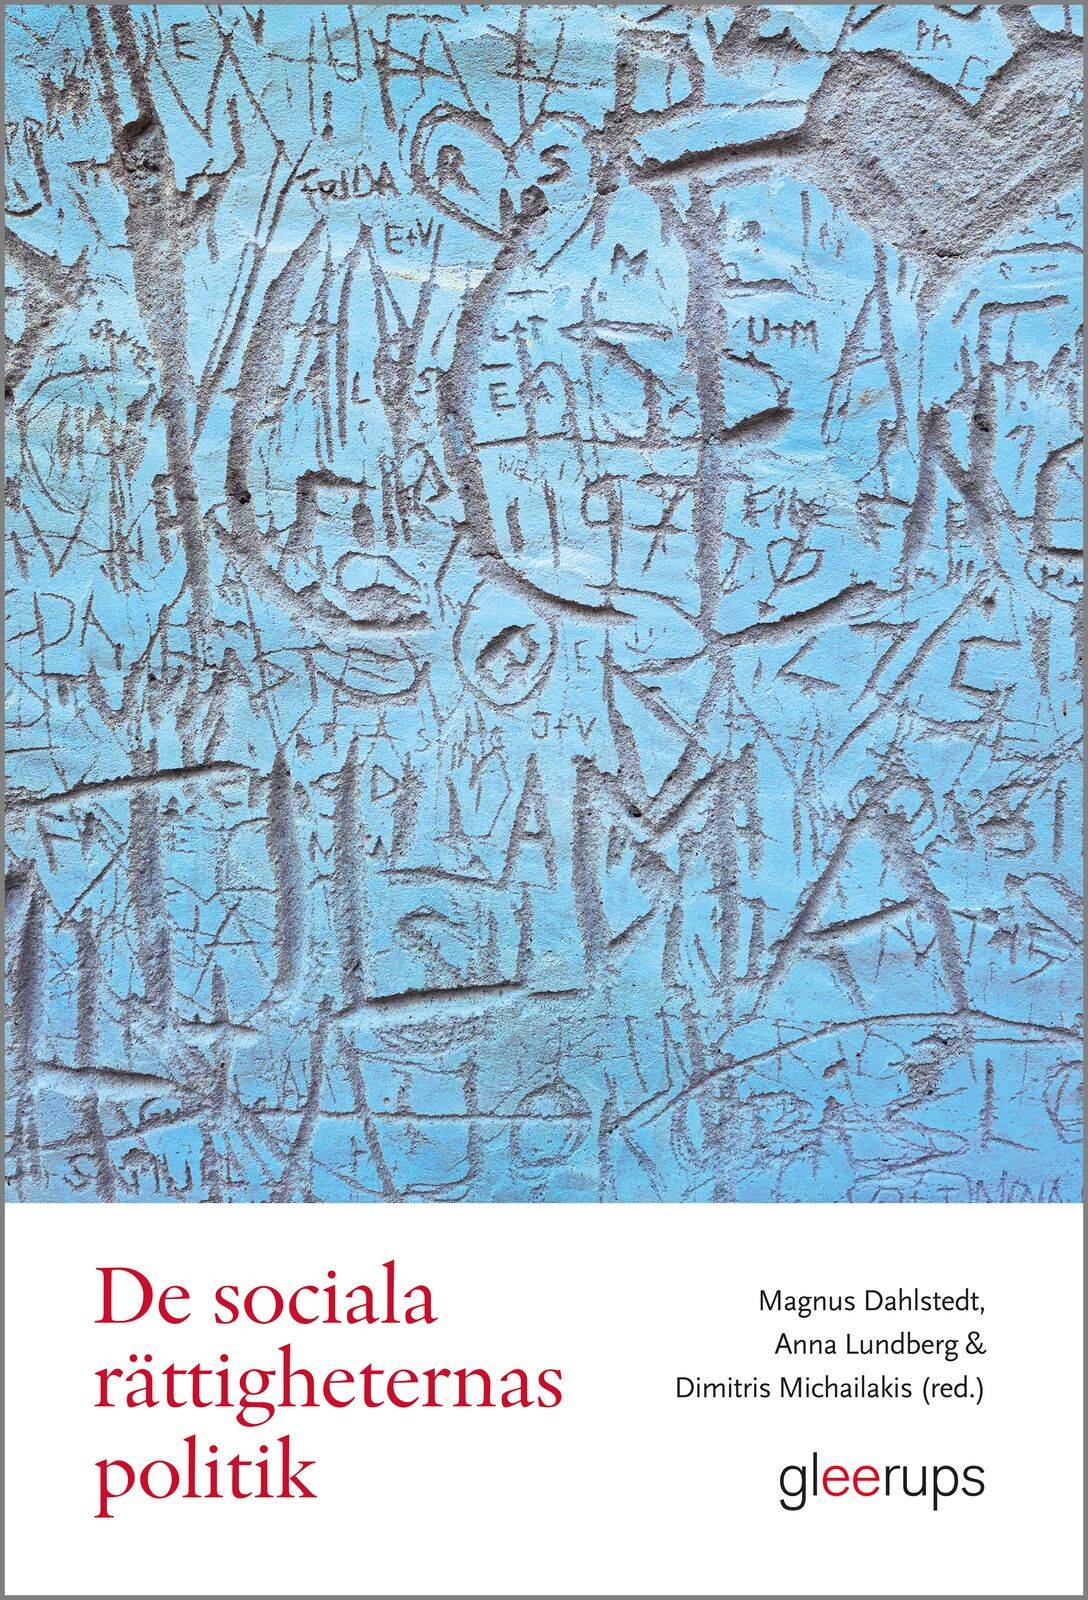 De sociala rättigheternas politik : förhandlingar och spänningsfält